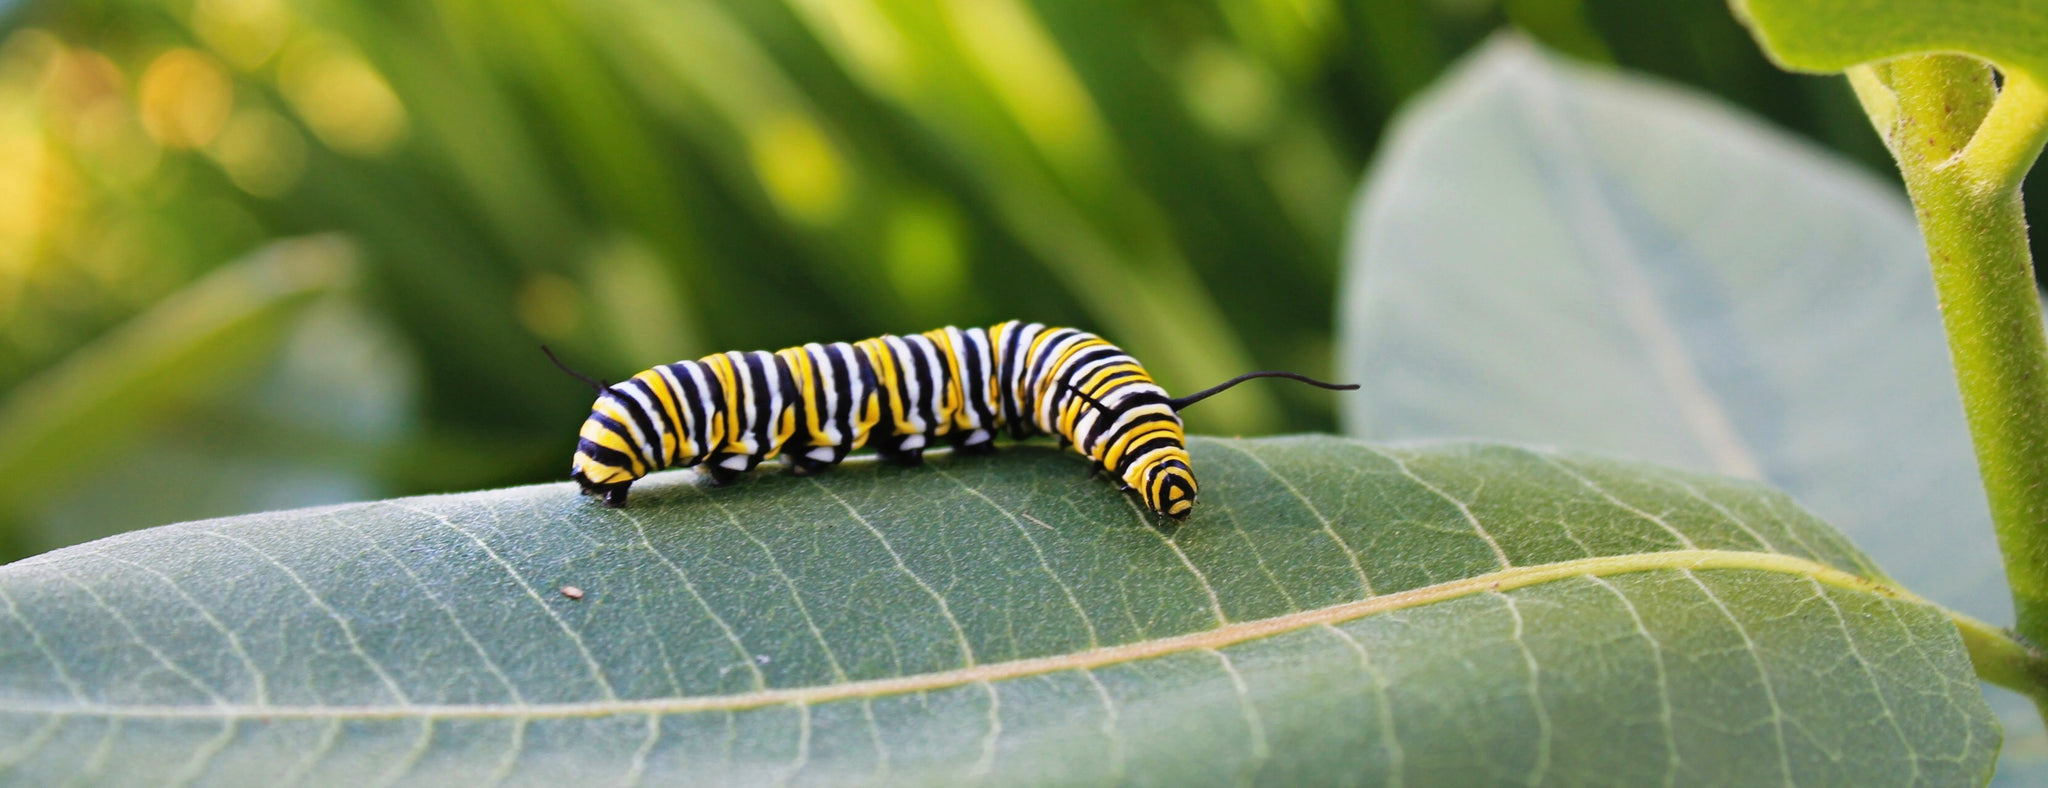 Monarch Caterpillar - Garden Path Homemade Soap - Canada